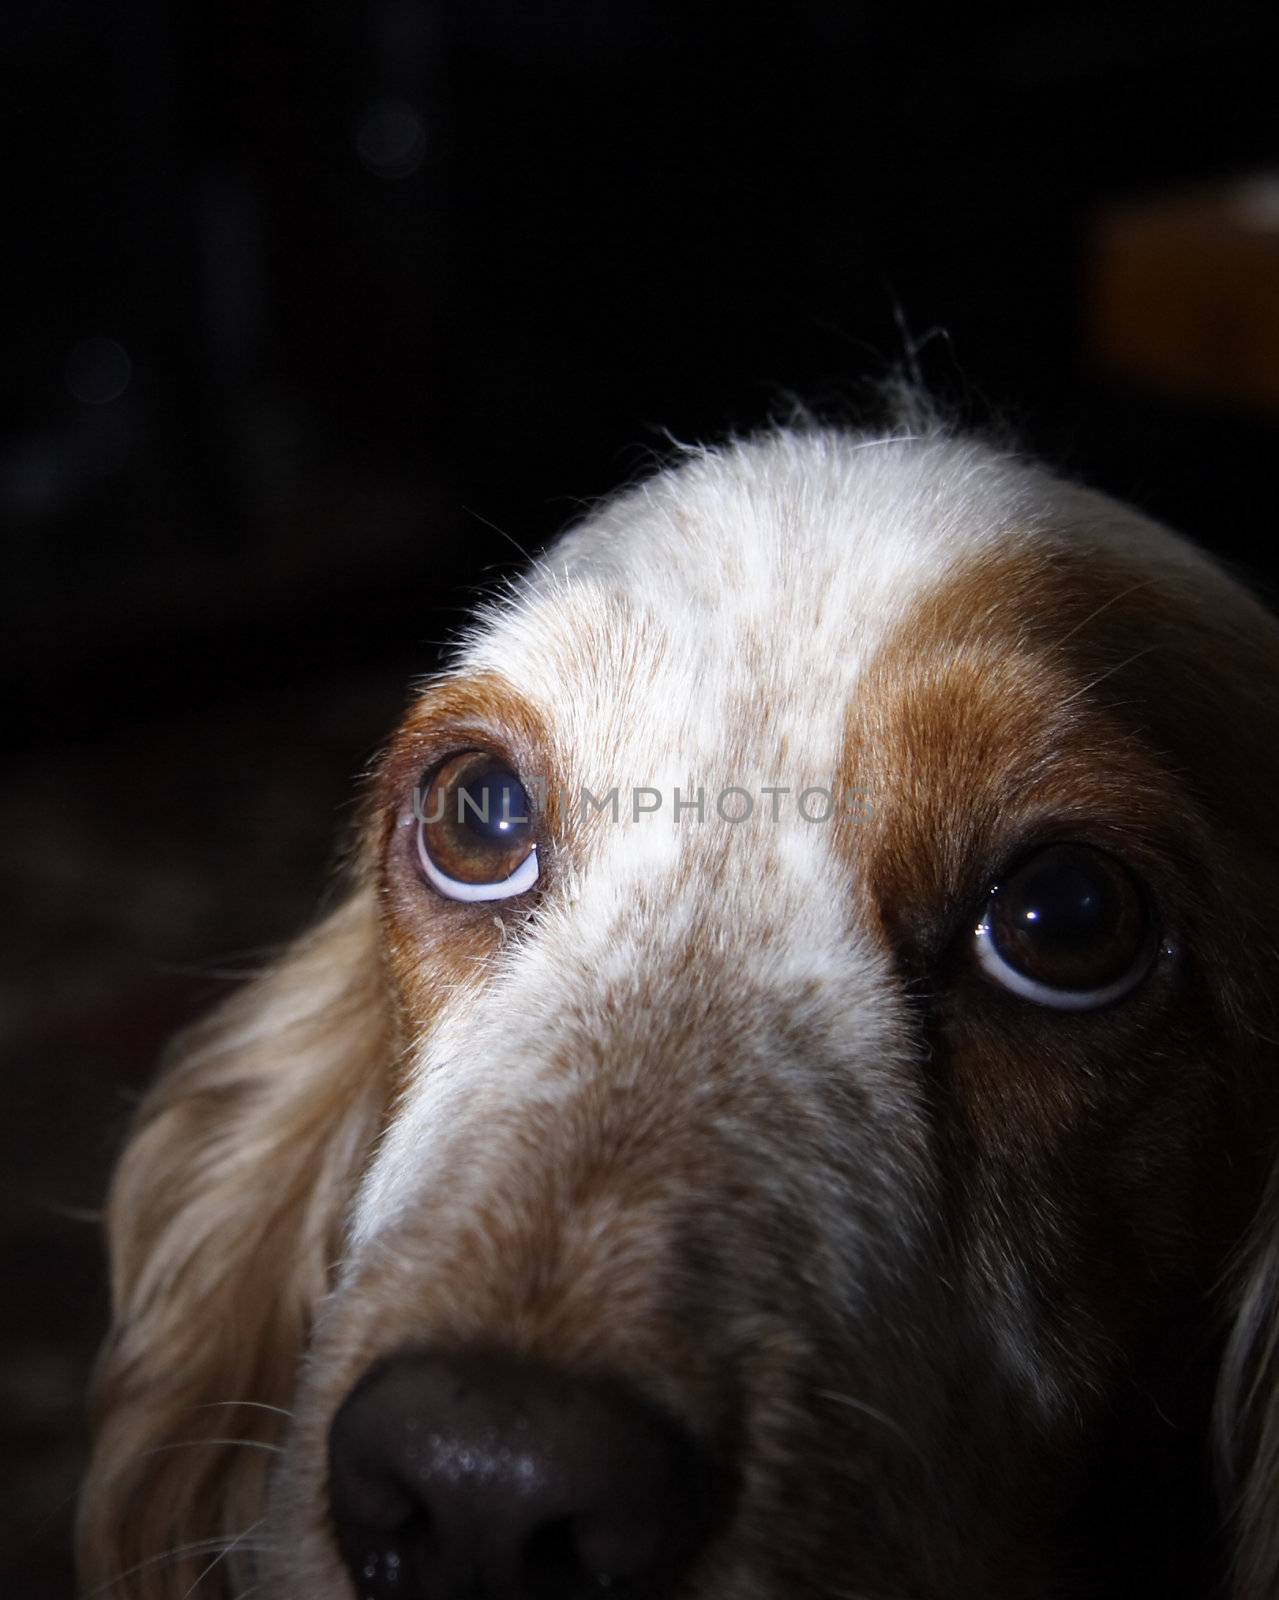 puppy dog eyes against a dark background